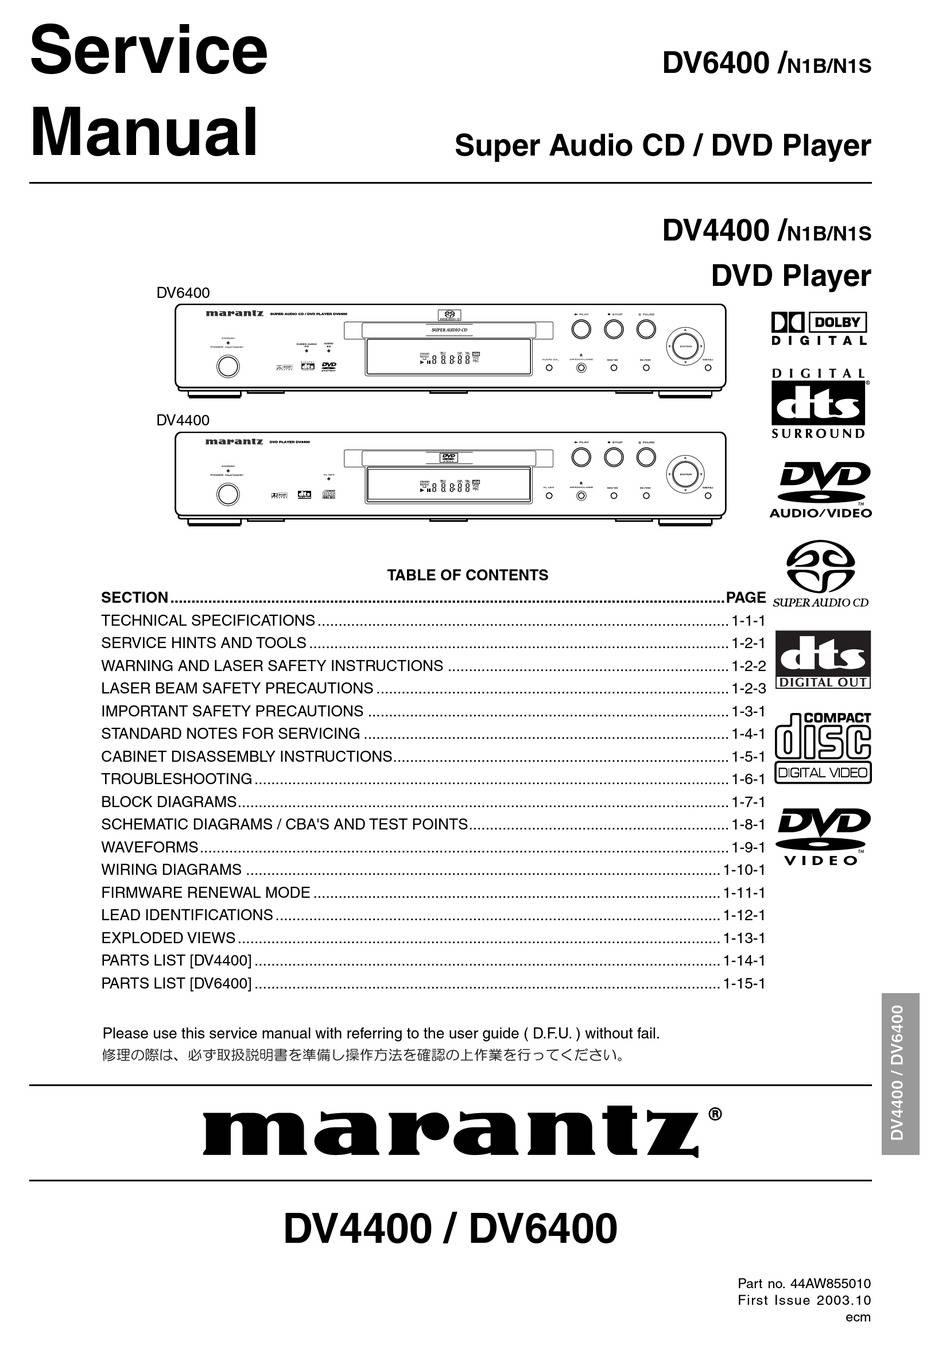 Marantz DV4400